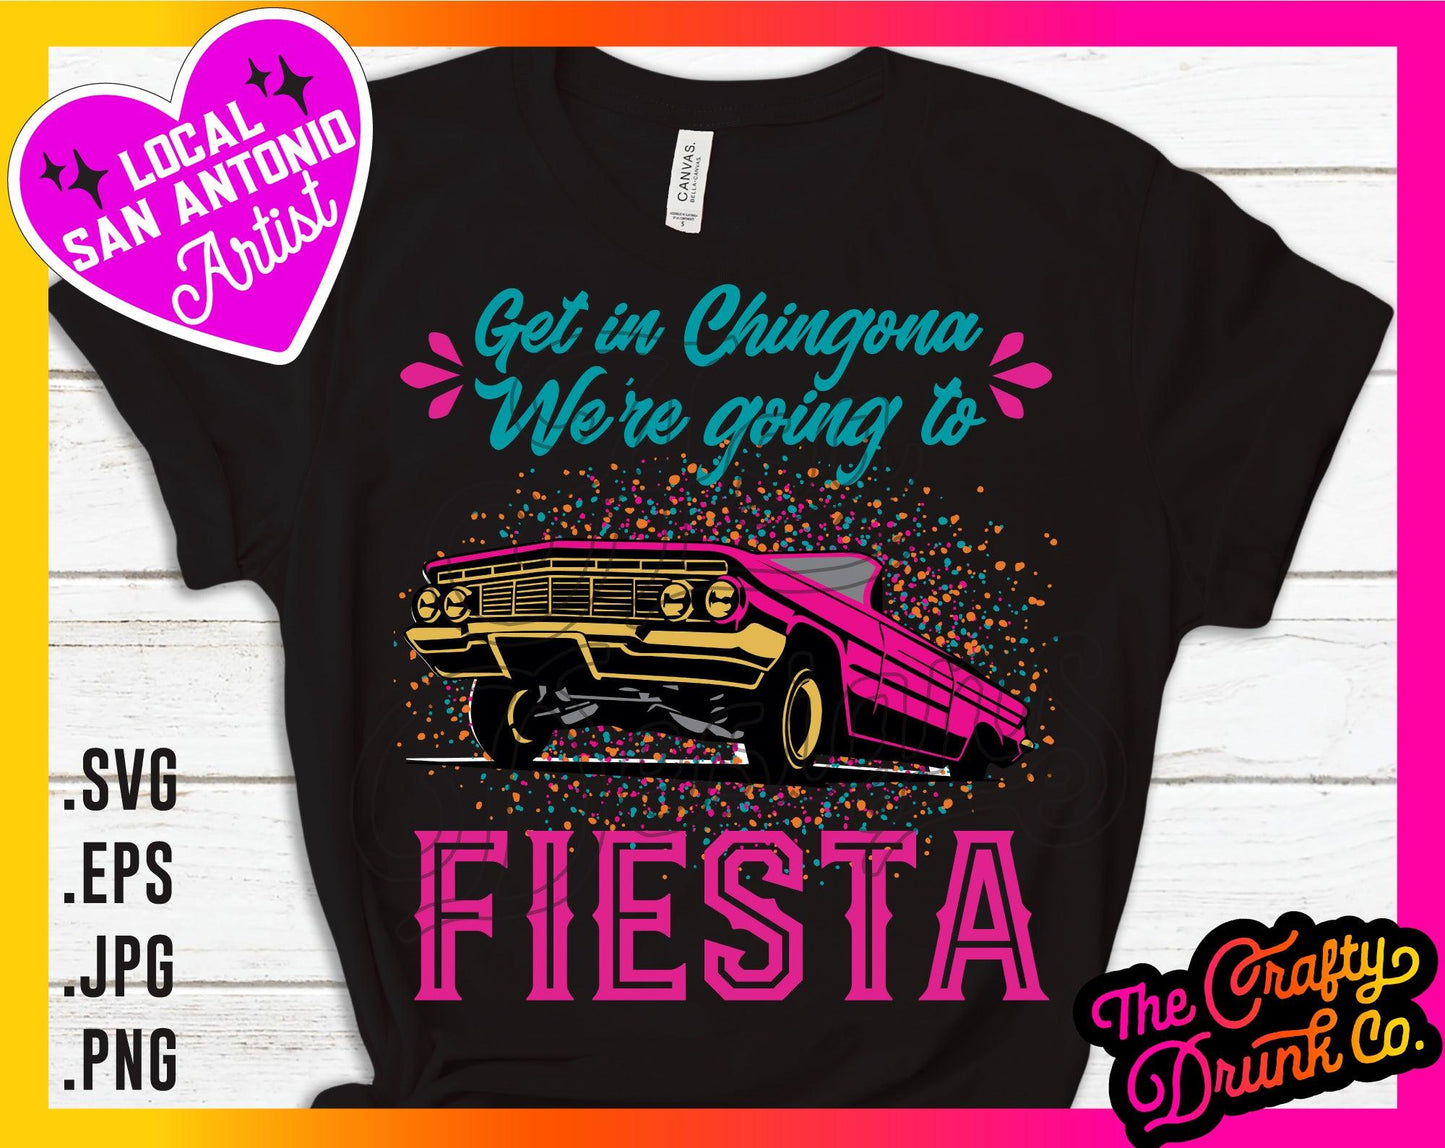 Get in Chingona, We're going to Fiesta - TheCraftyDrunkCo